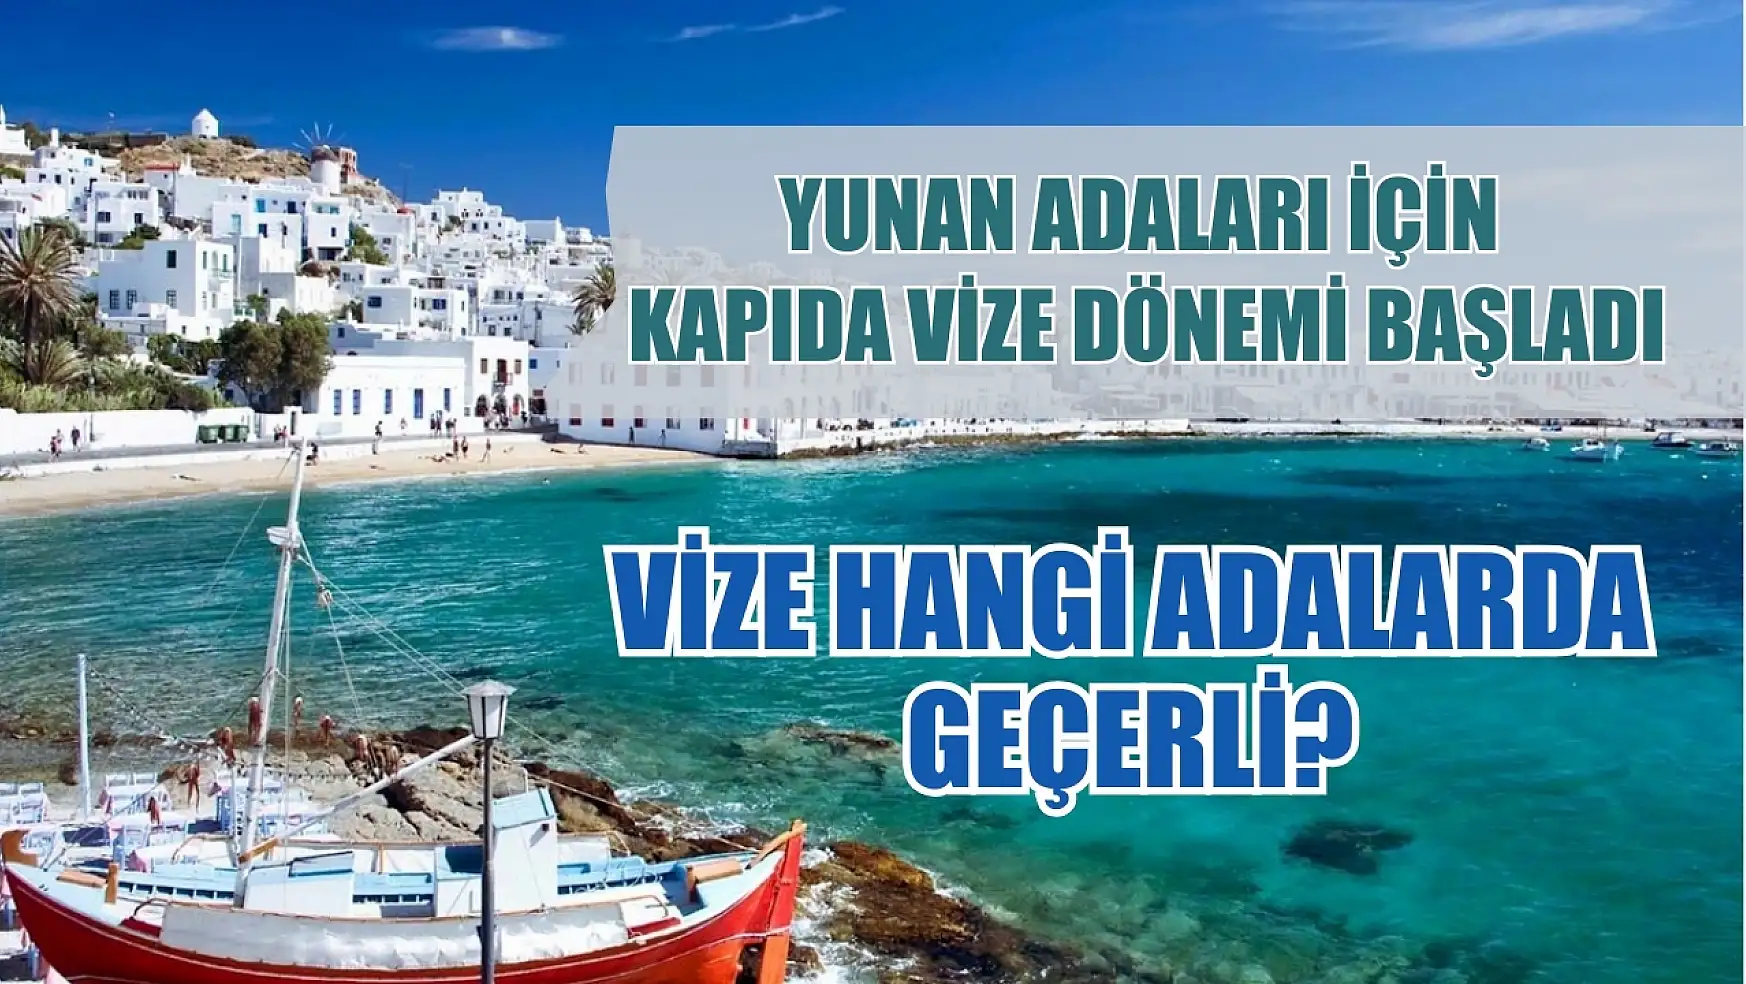 Yunan adaları için kapıda vize dönemi başladı Nasıl vize alınır? Vize hangi adalarda geçerli?